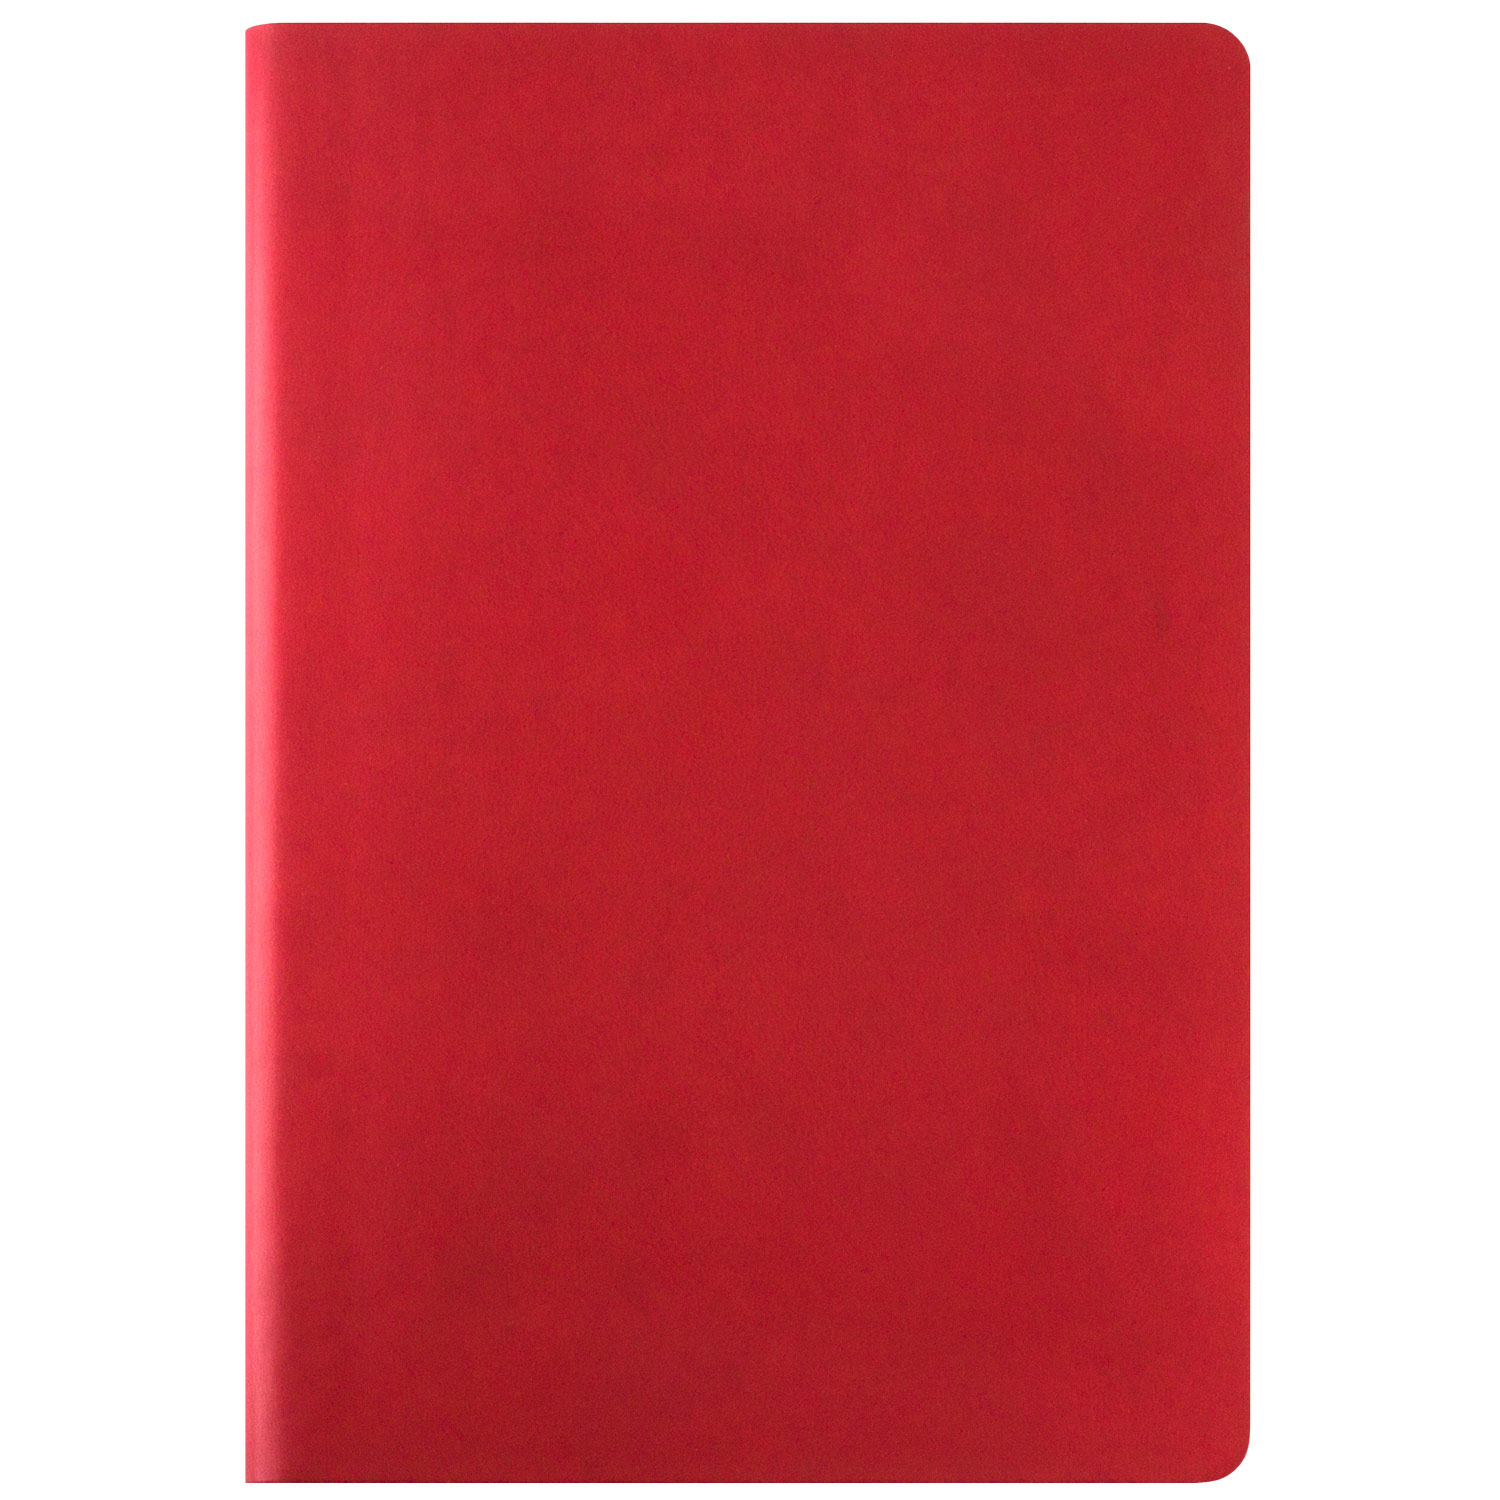 Ежедневник недатированный, Portobello Trend NEW, Winner City, 145х210, 224 стр, красный (без упаковки, без стикера)